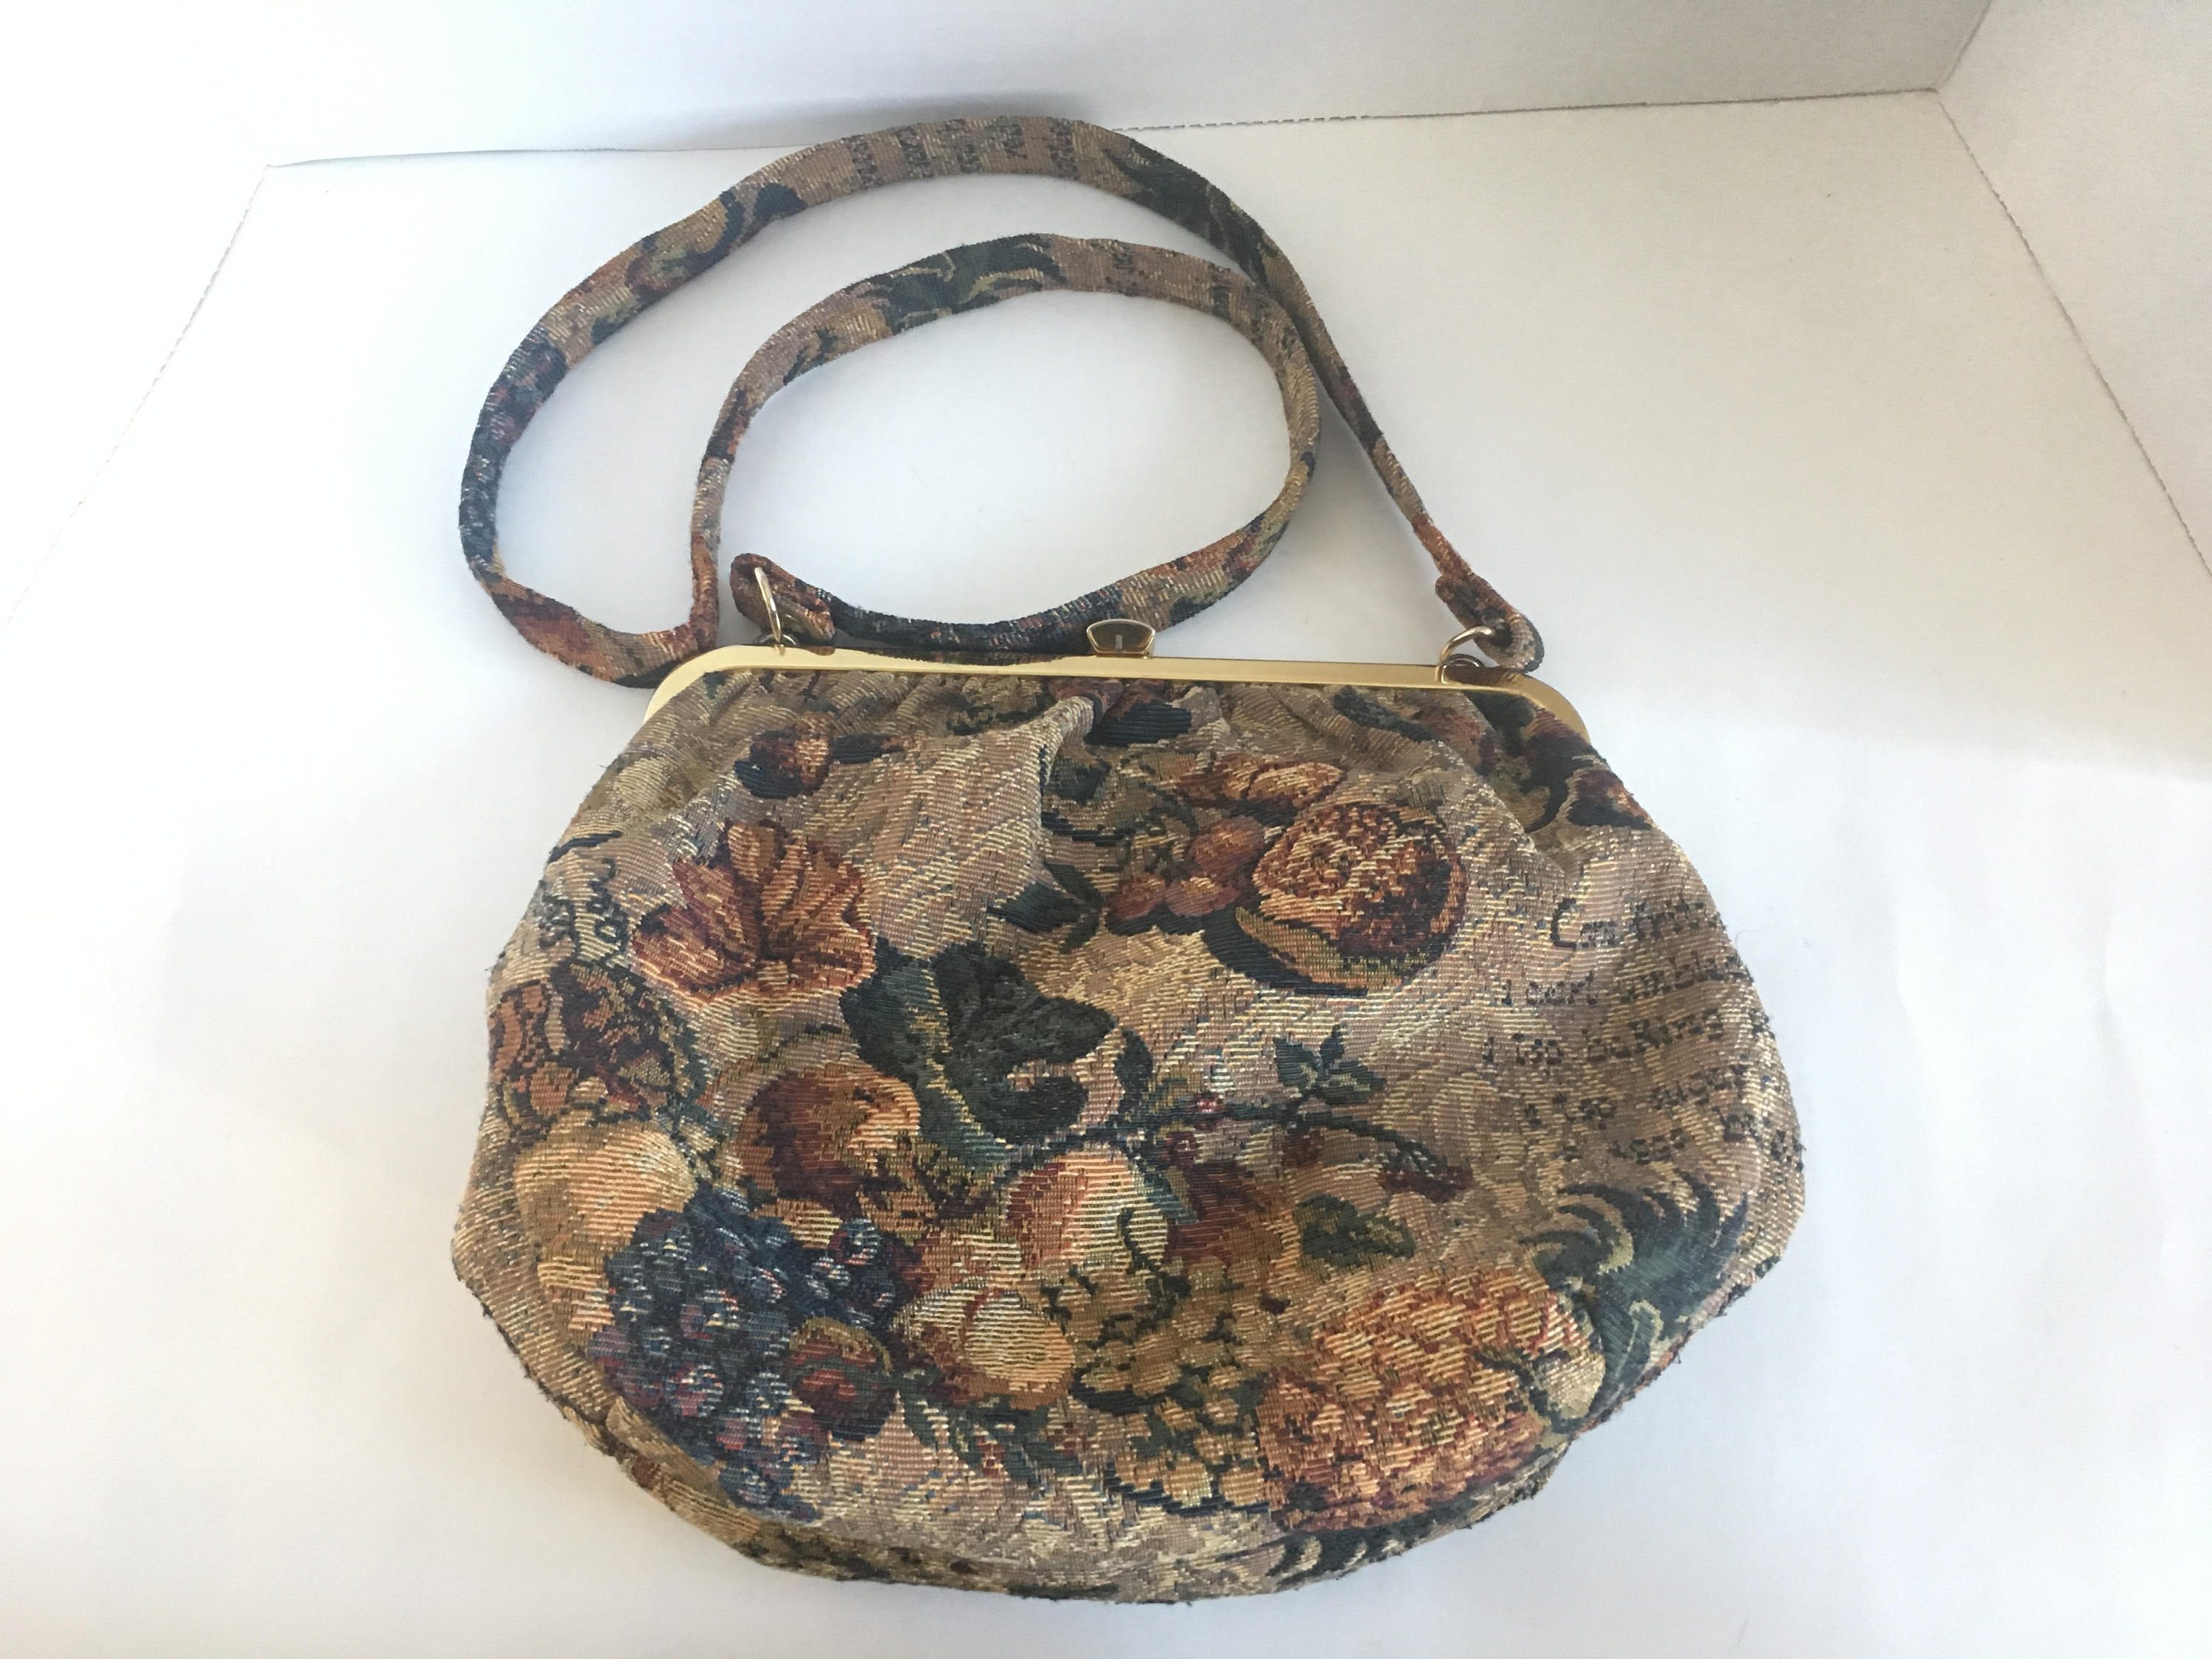 American Vintage Tapestry Vintage Handbags